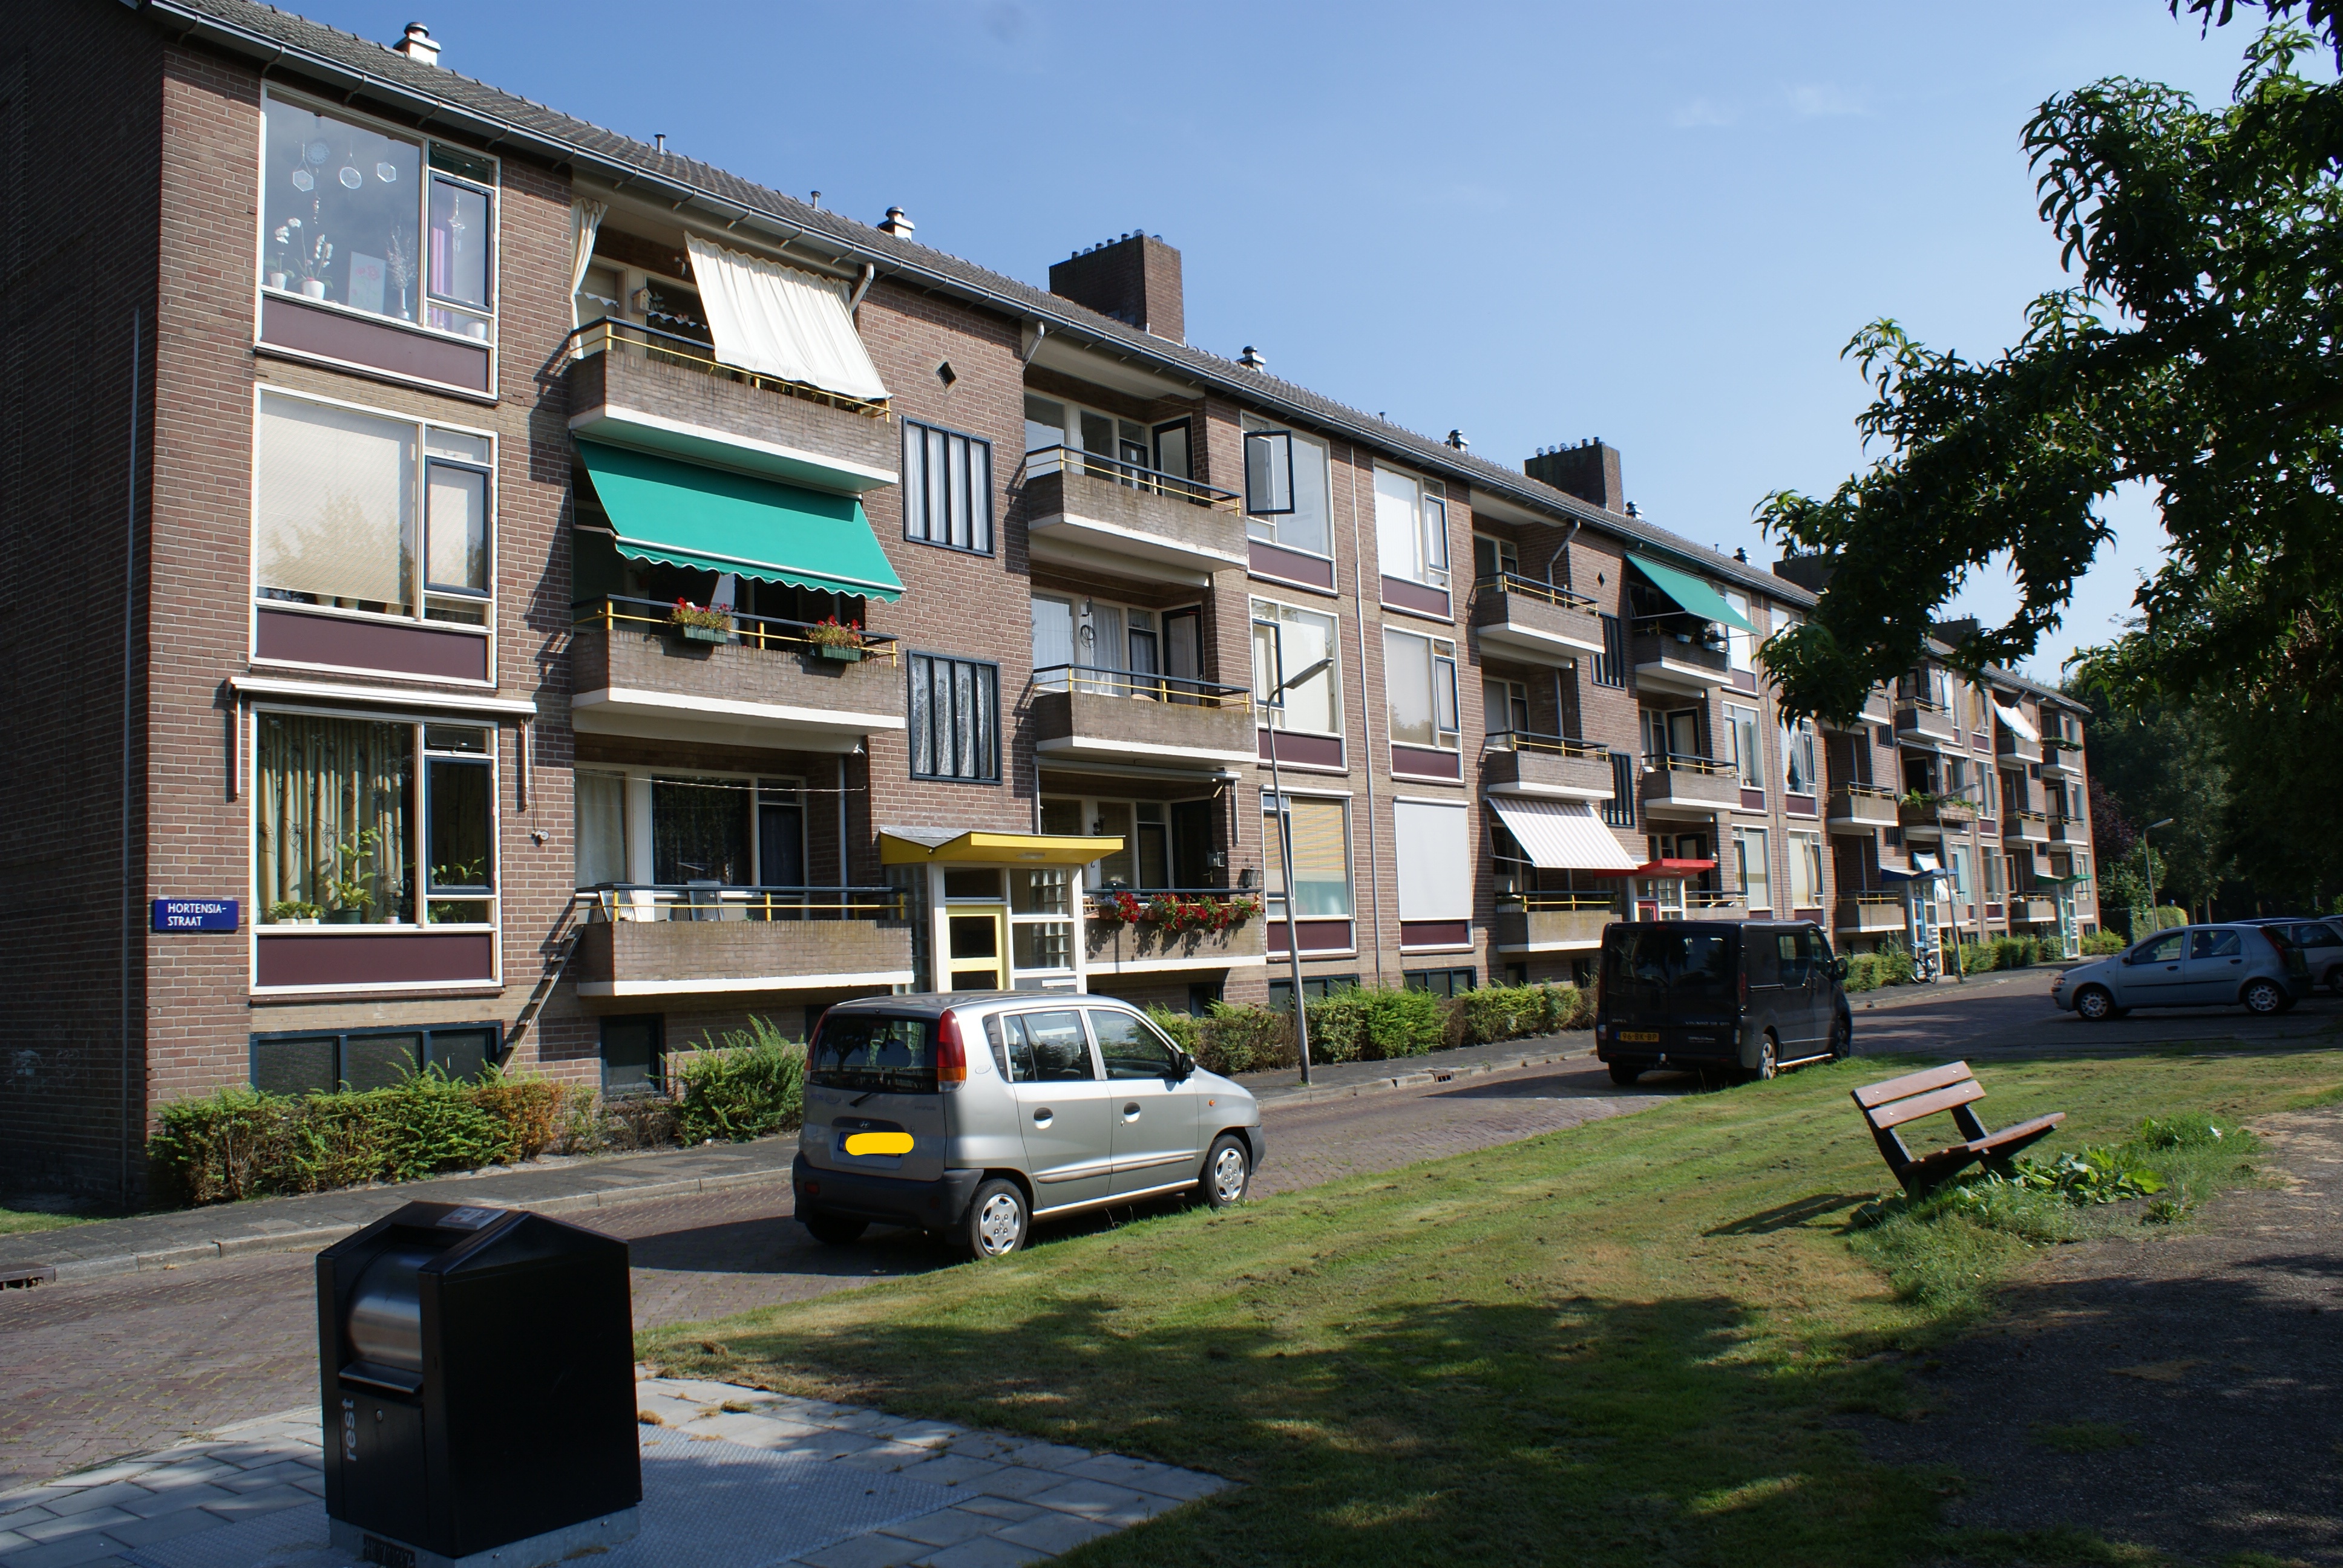 Hortensiastraat 39, 7906 JC Hoogeveen, Nederland